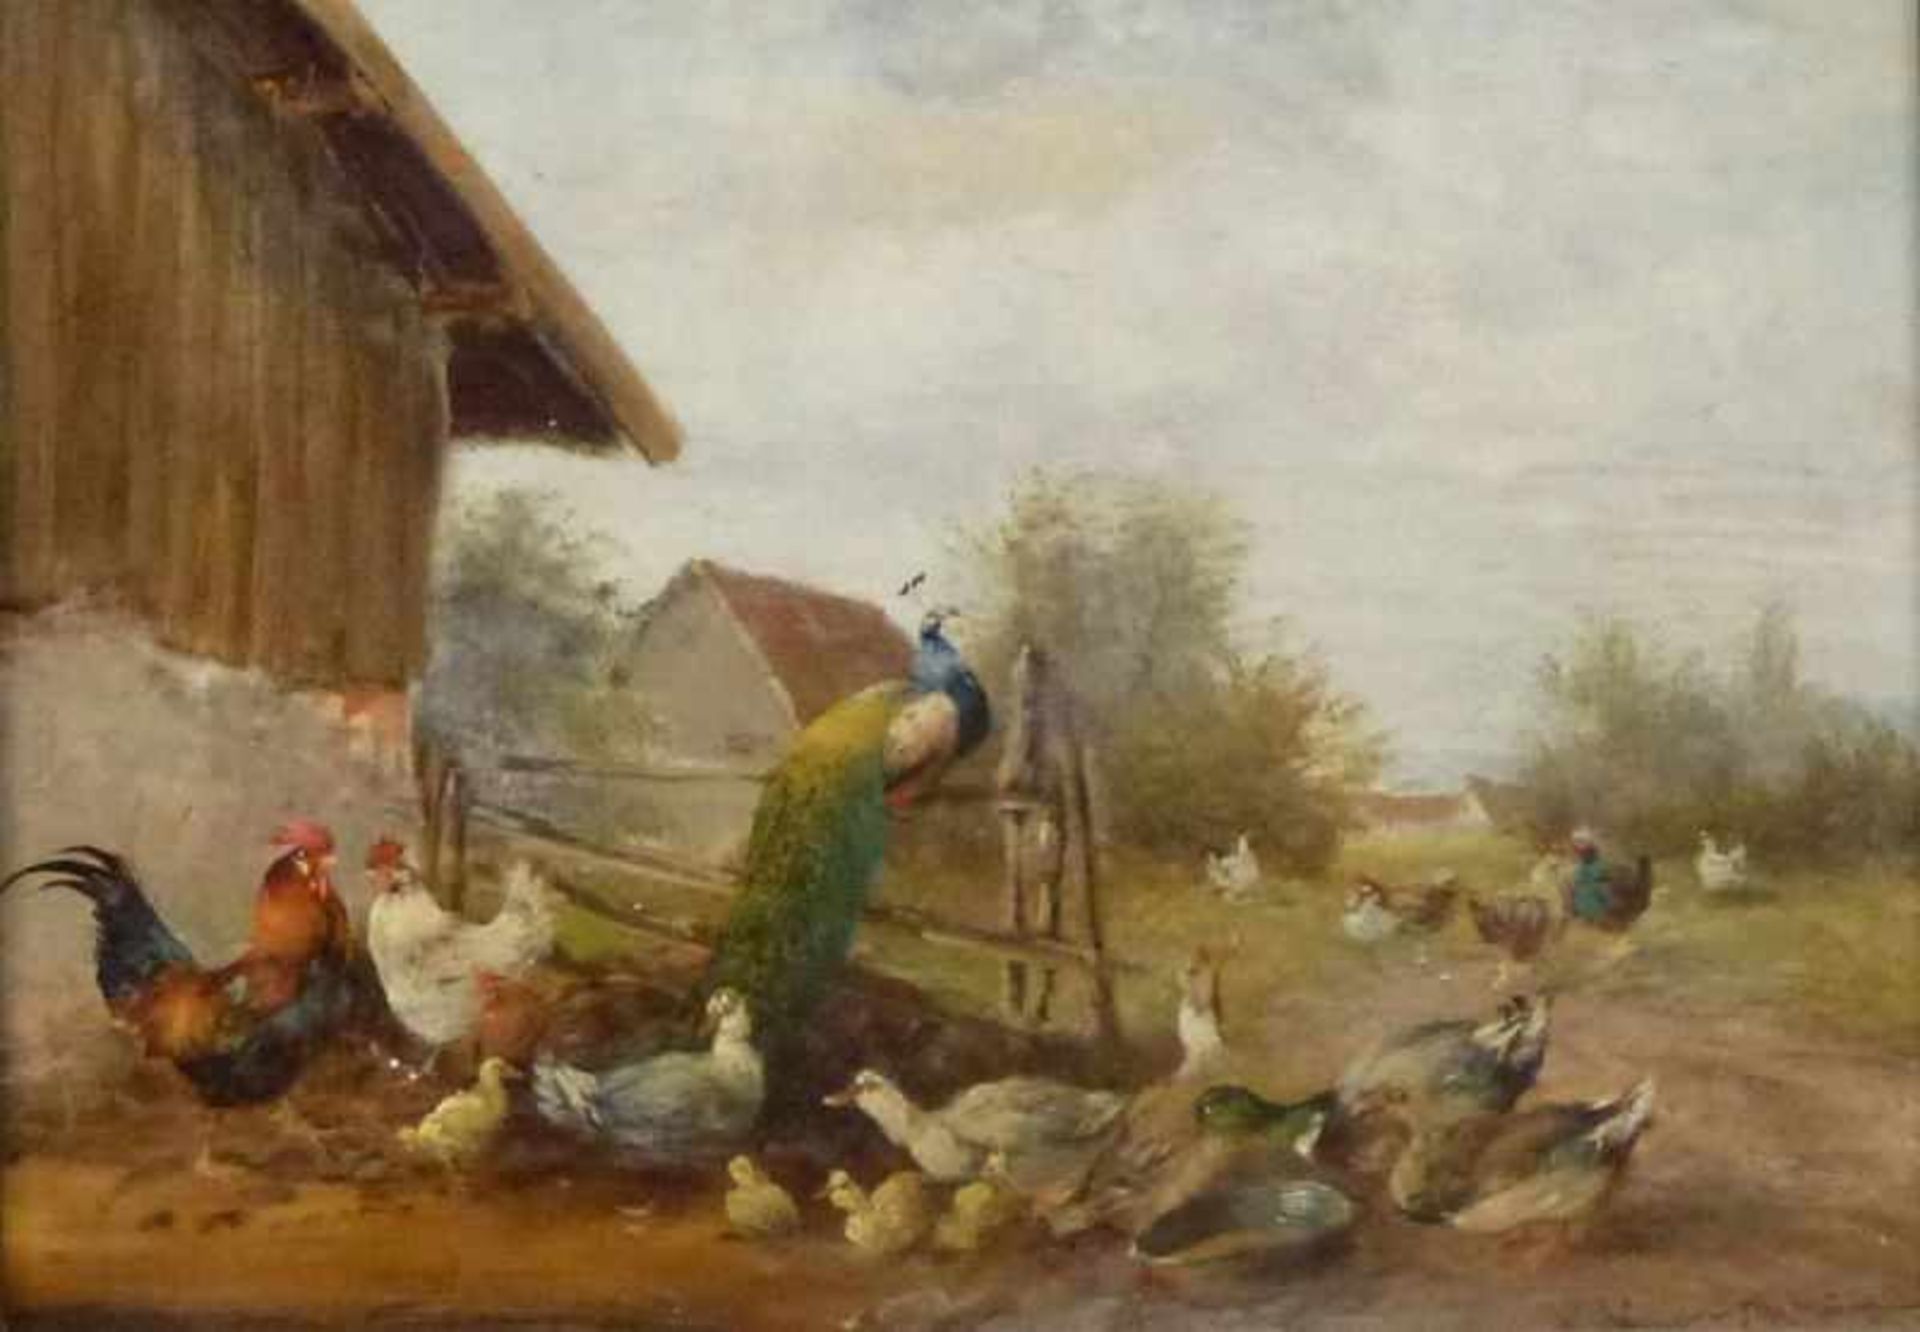 Hühnerhof, Max I Hänger (1874-1941) Öl/Holz, sign., Hühner, Enten und Pfau neben Hof, GR,18x24cm